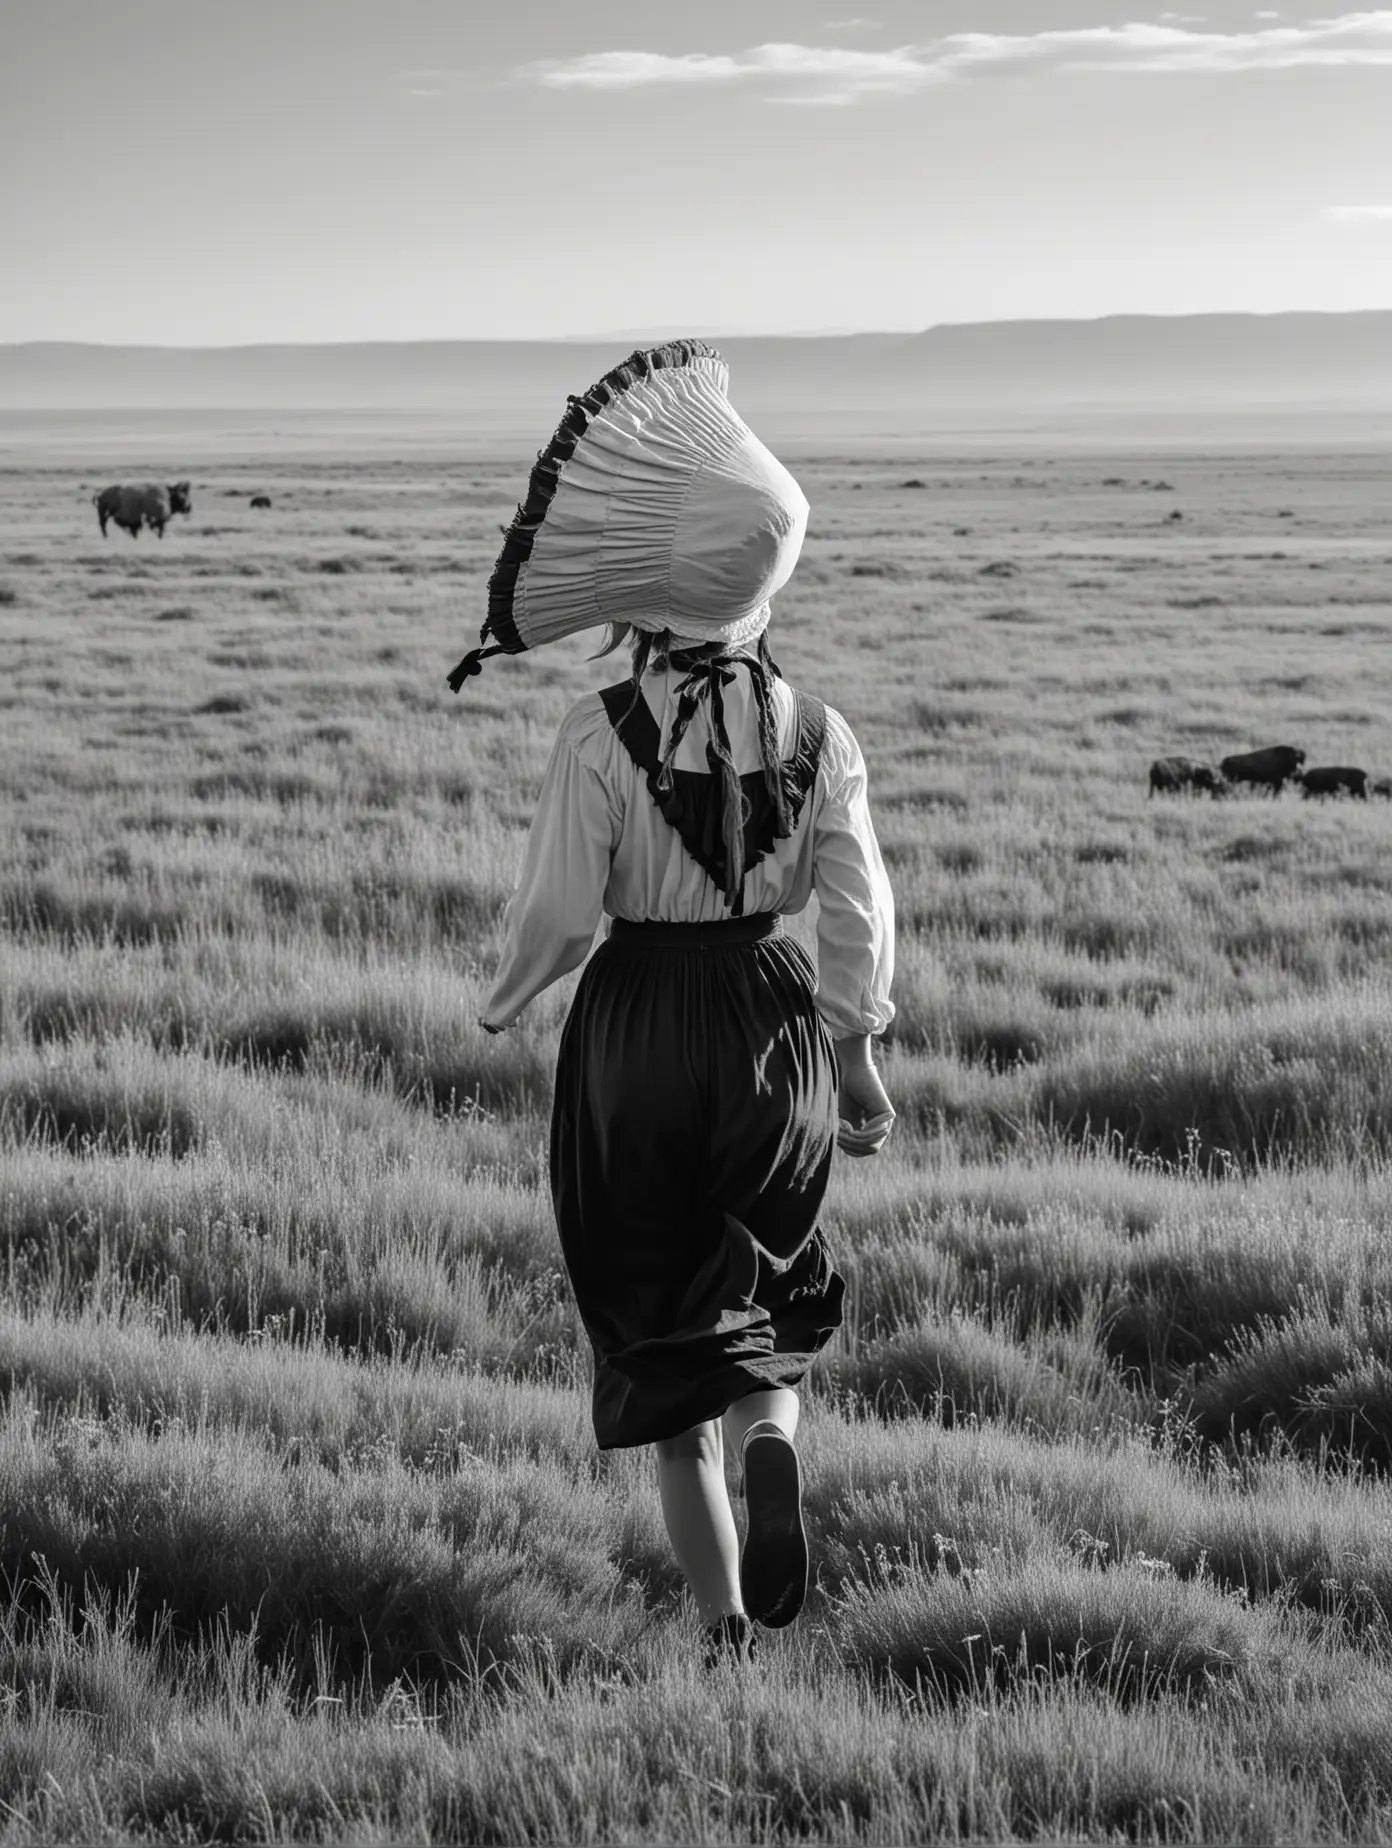 Pioneer Woman Running Through BuffaloFilled Prairie in Monochrome